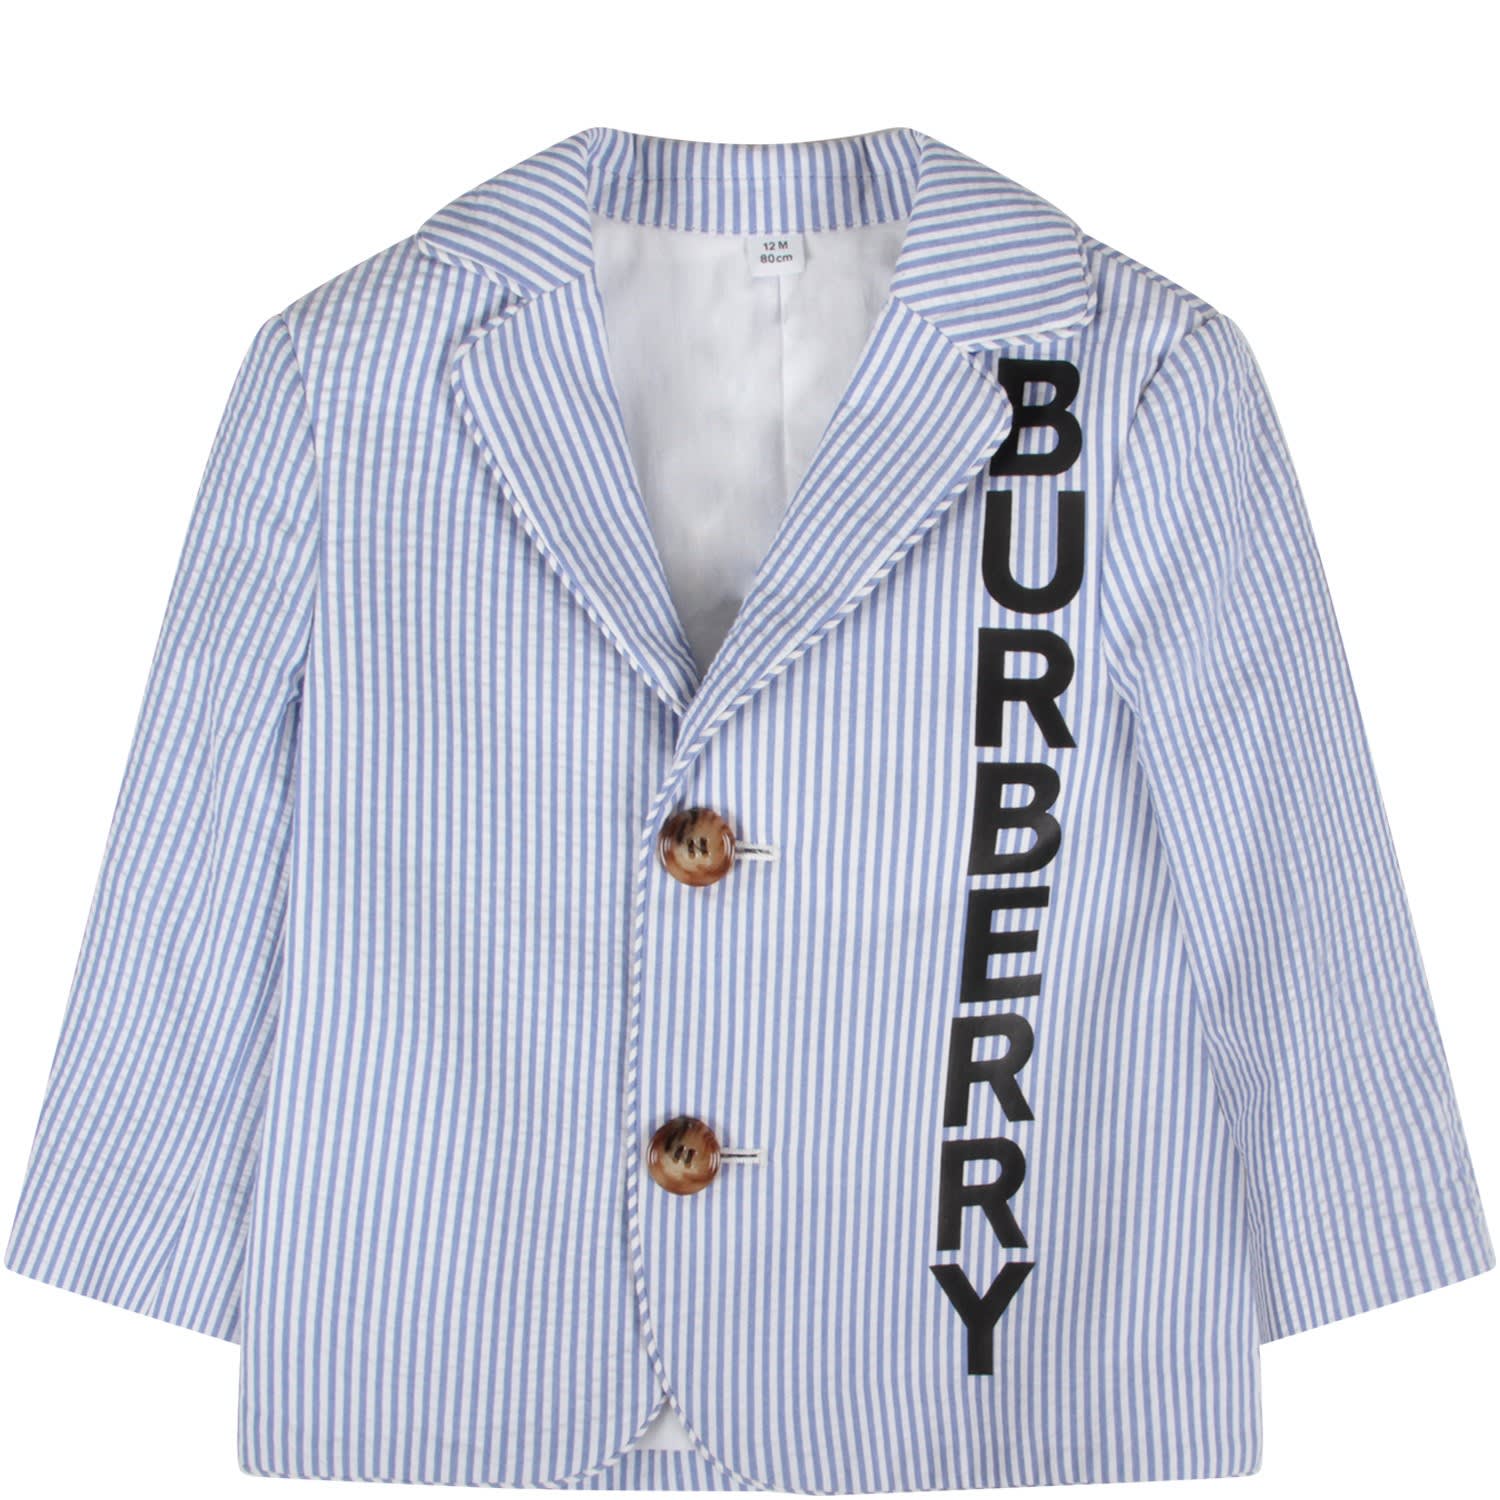 Burberry Striped Jacket Factory Sale, 55% OFF | www.ingeniovirtual.com